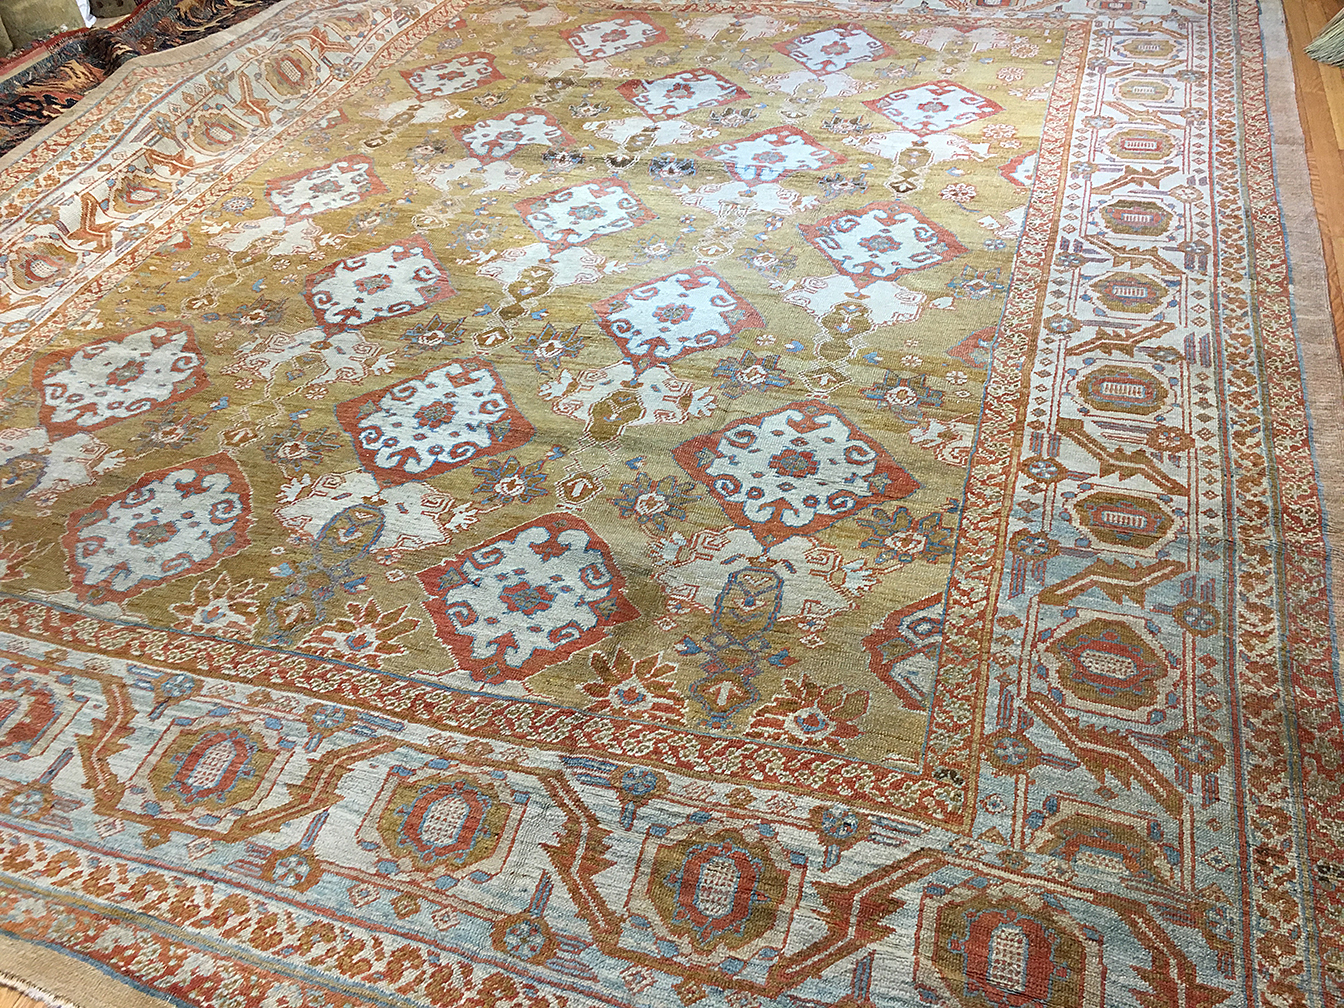 Antique bakshaish Carpet - # 53190